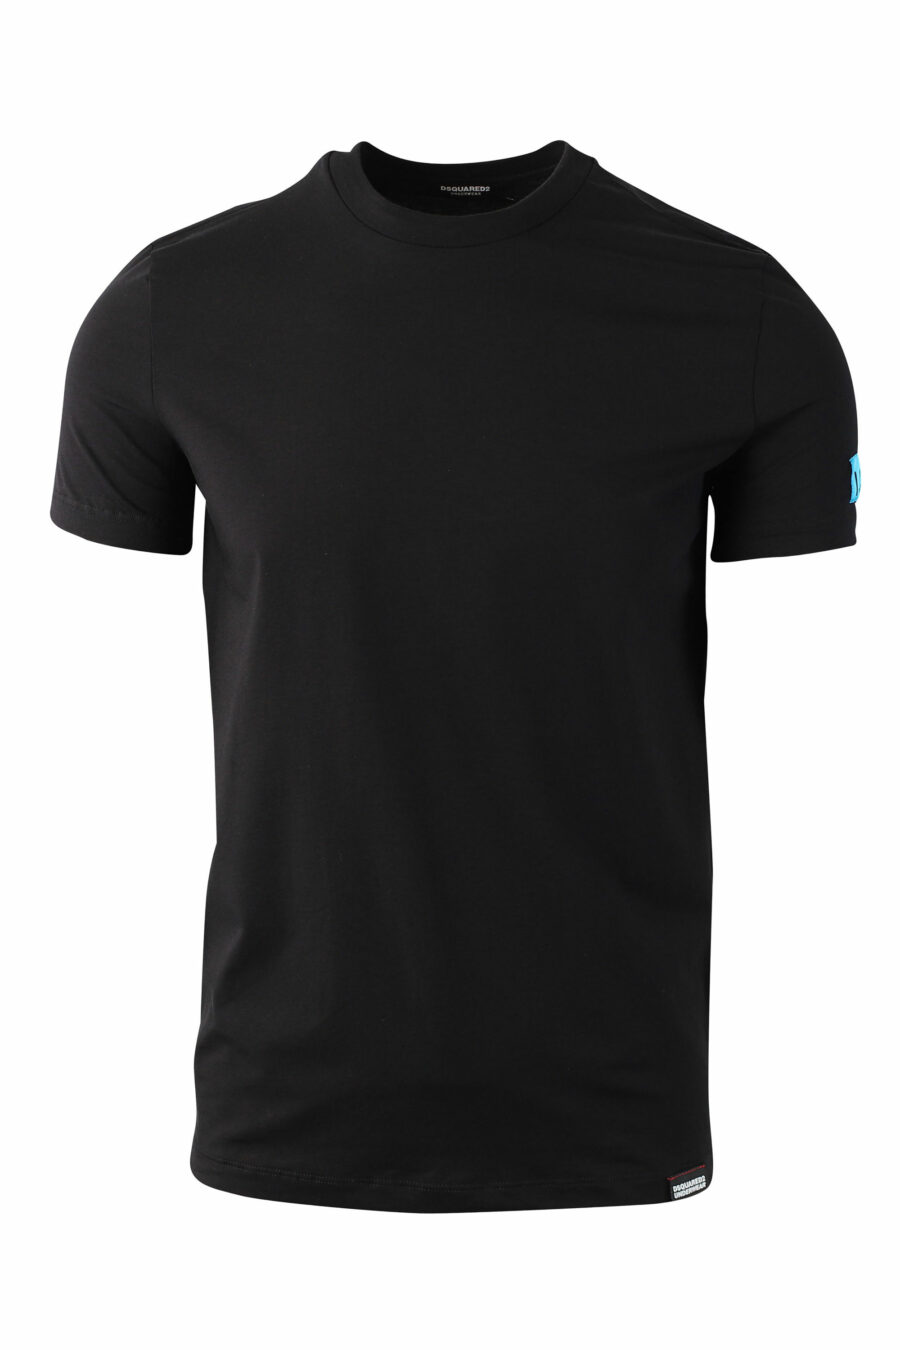 Black T-shirt with blue mini-logo "icon" on sleeve - IMG 0038 1